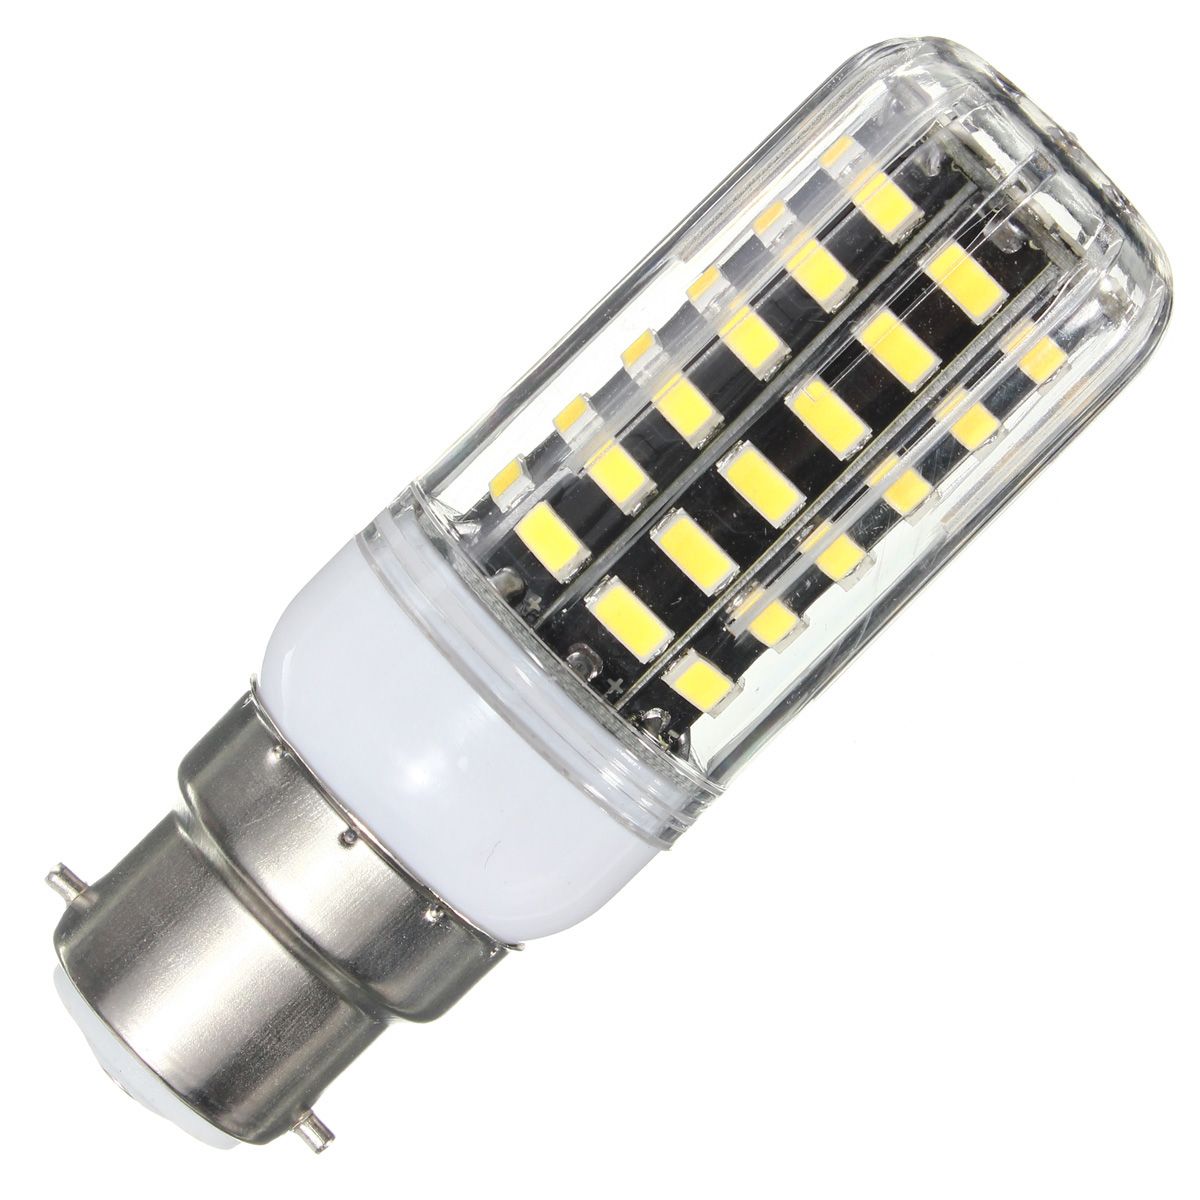 E27-E14-B22-G9-GU10-7W-64-SMD-5733-1000LM--LED-Warm-White-White-Cover-Corn-Bulb-AC-220V-1040961